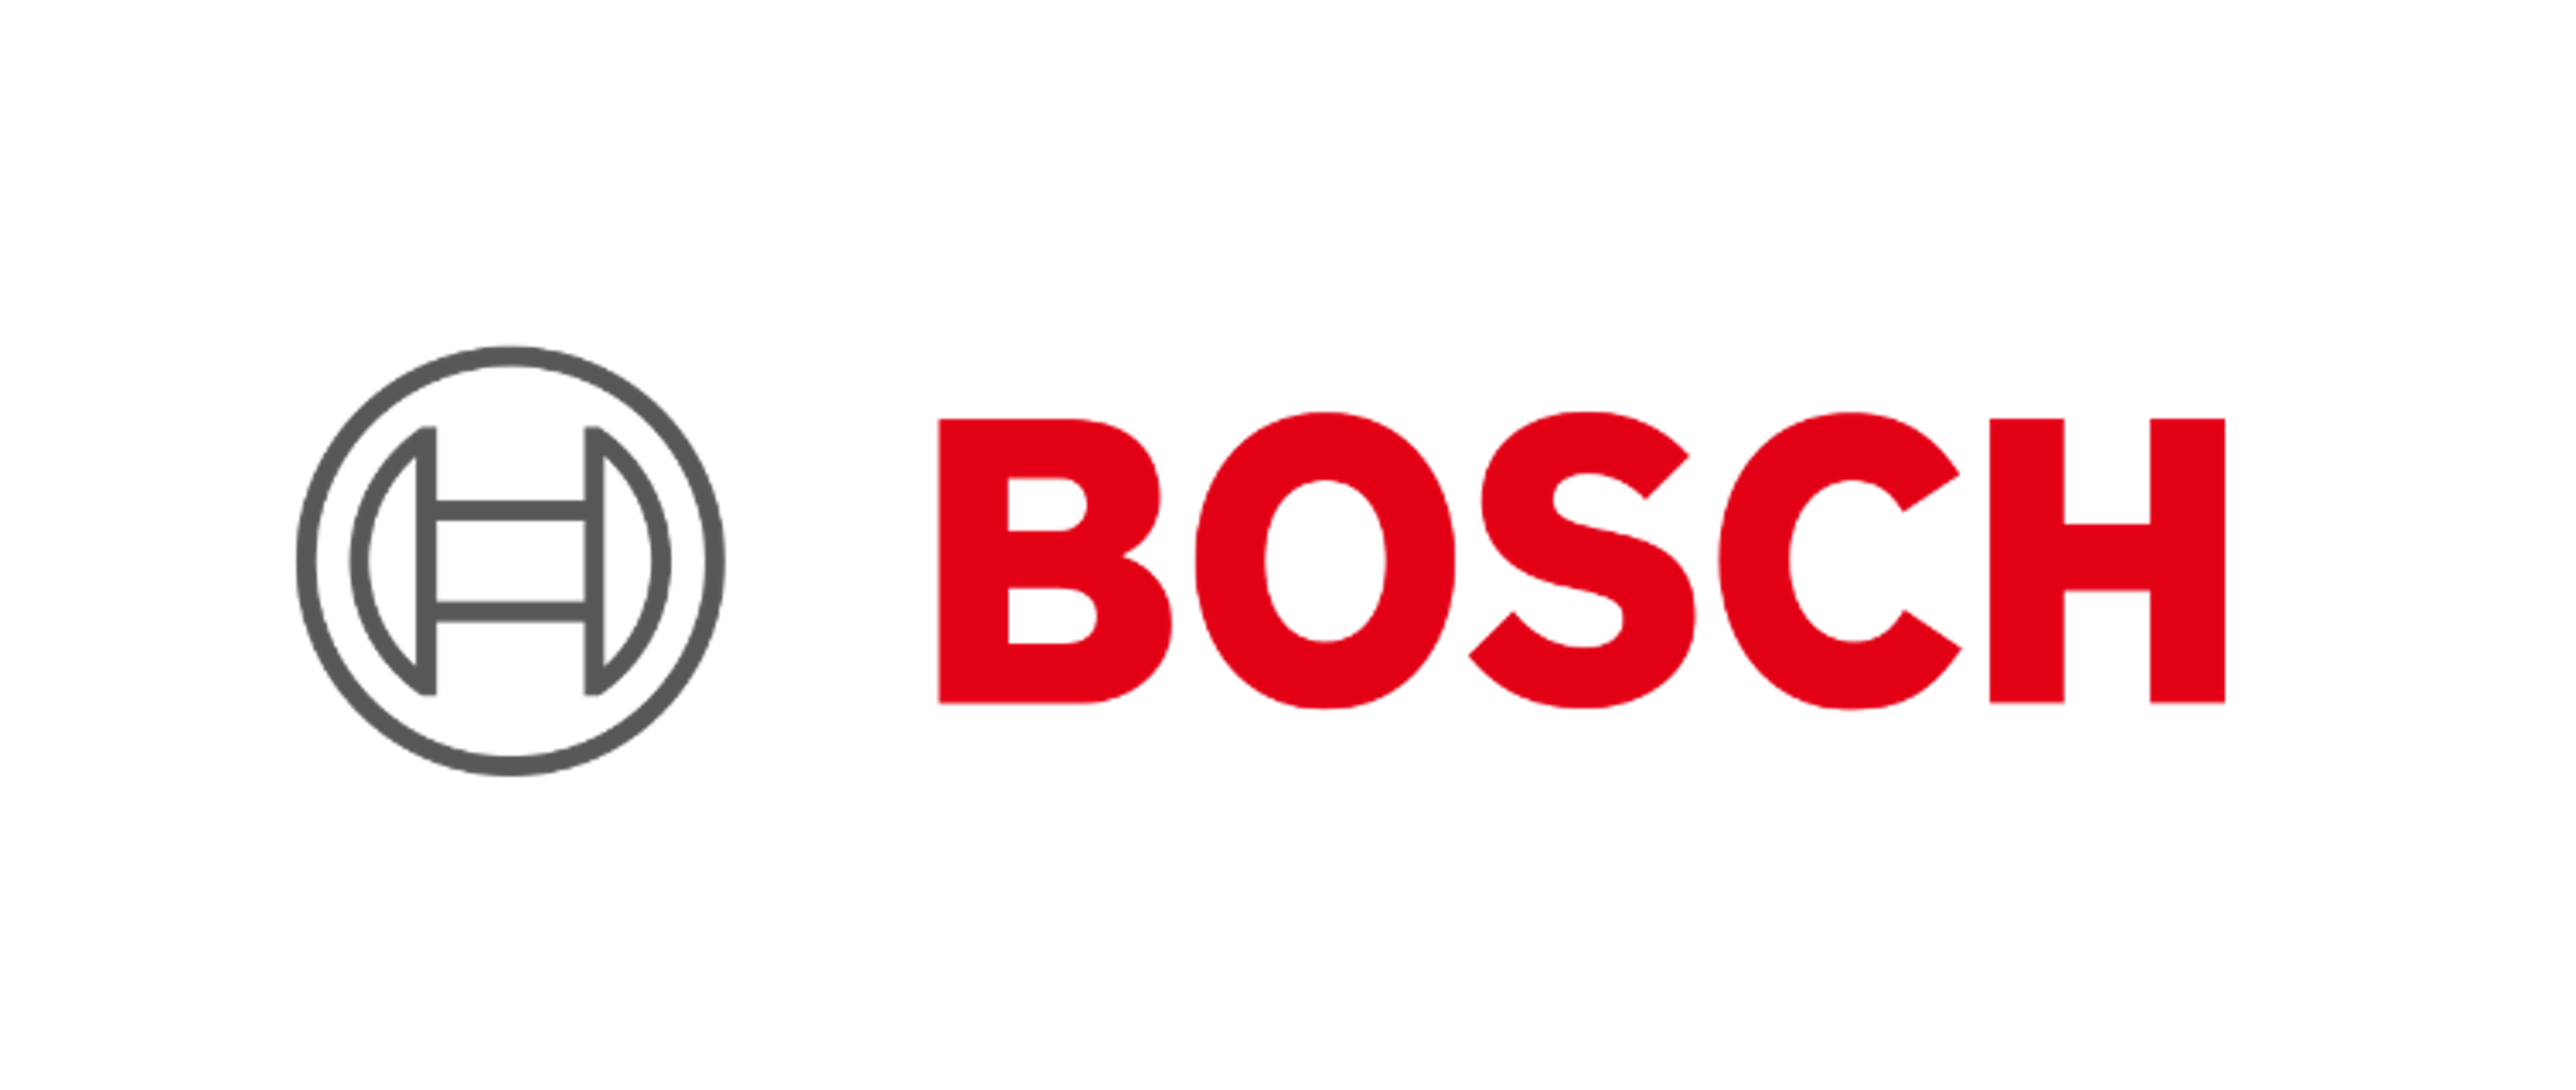 Logo from Bosch